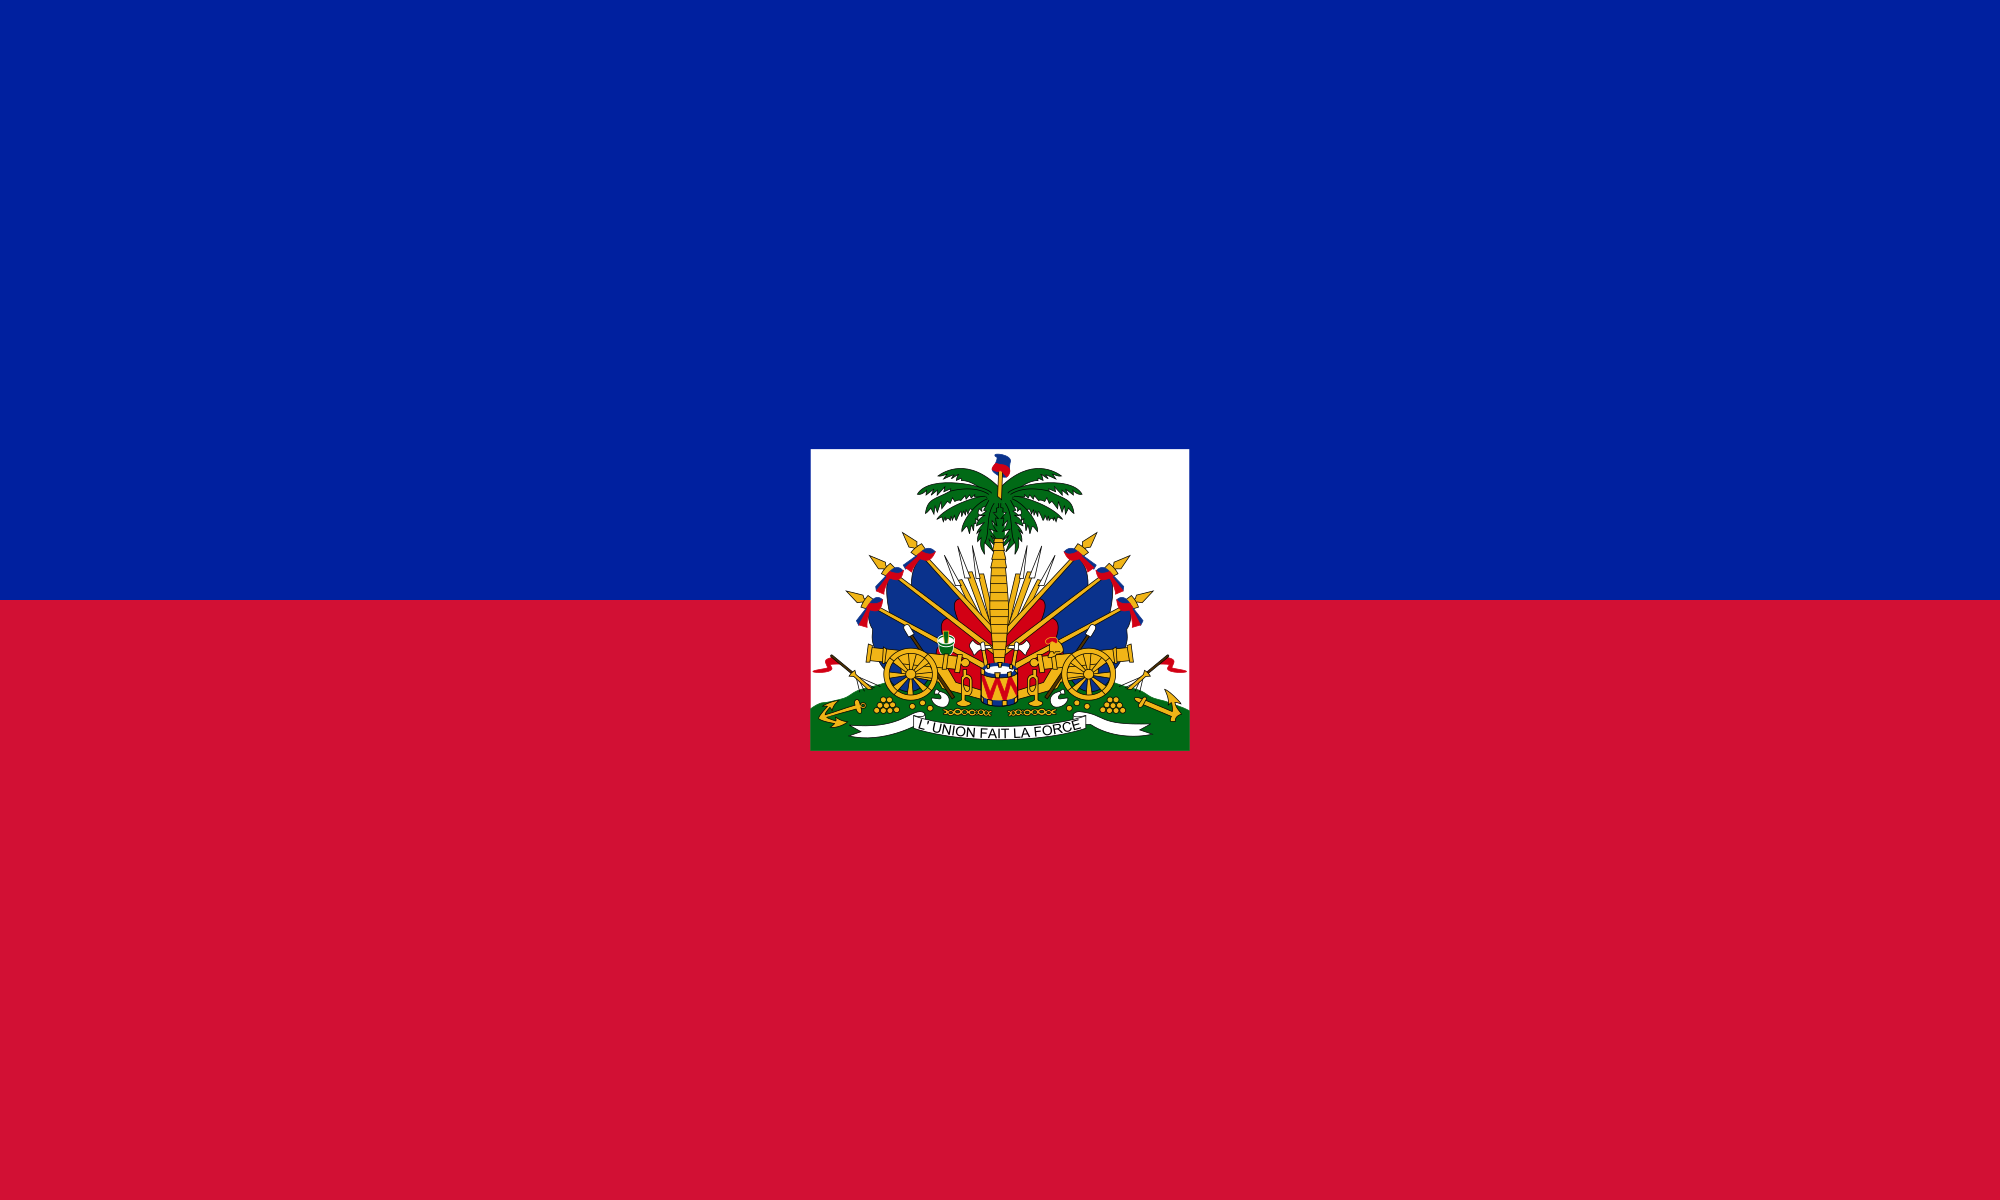 Connaissez-vous « La Dessalinienne », l’hymne national de Haiti ?